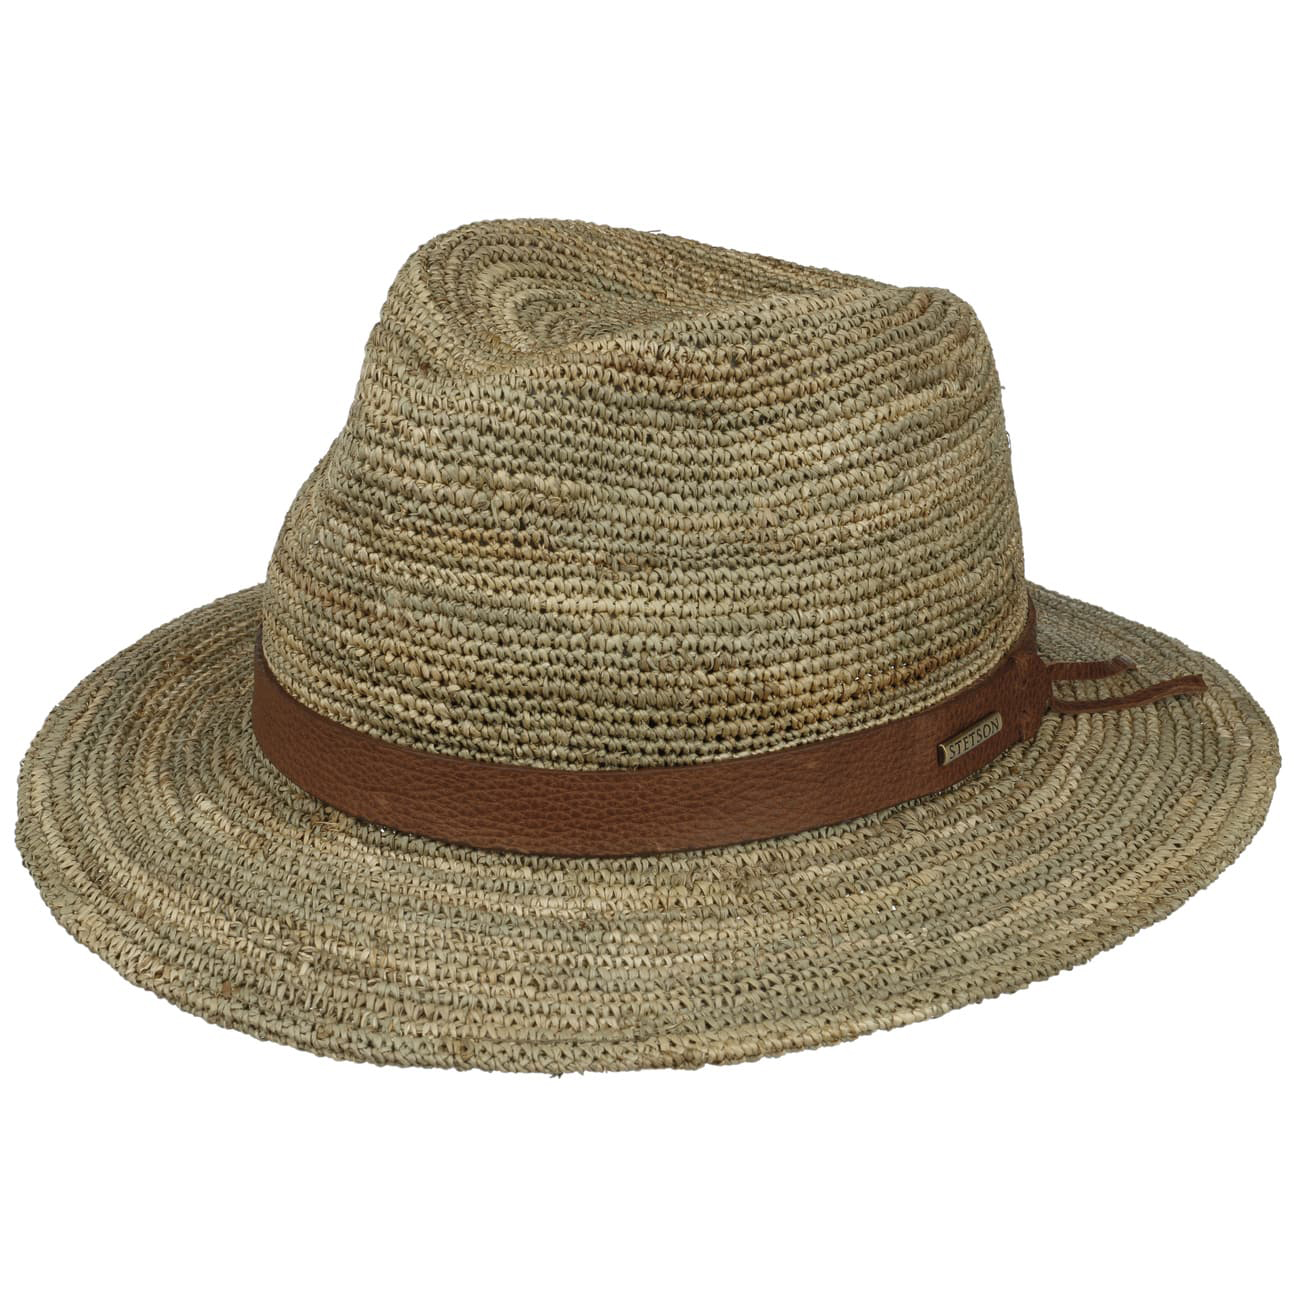 Stetson---Crochet-Seagrass-Traveller-Hat---Natural1